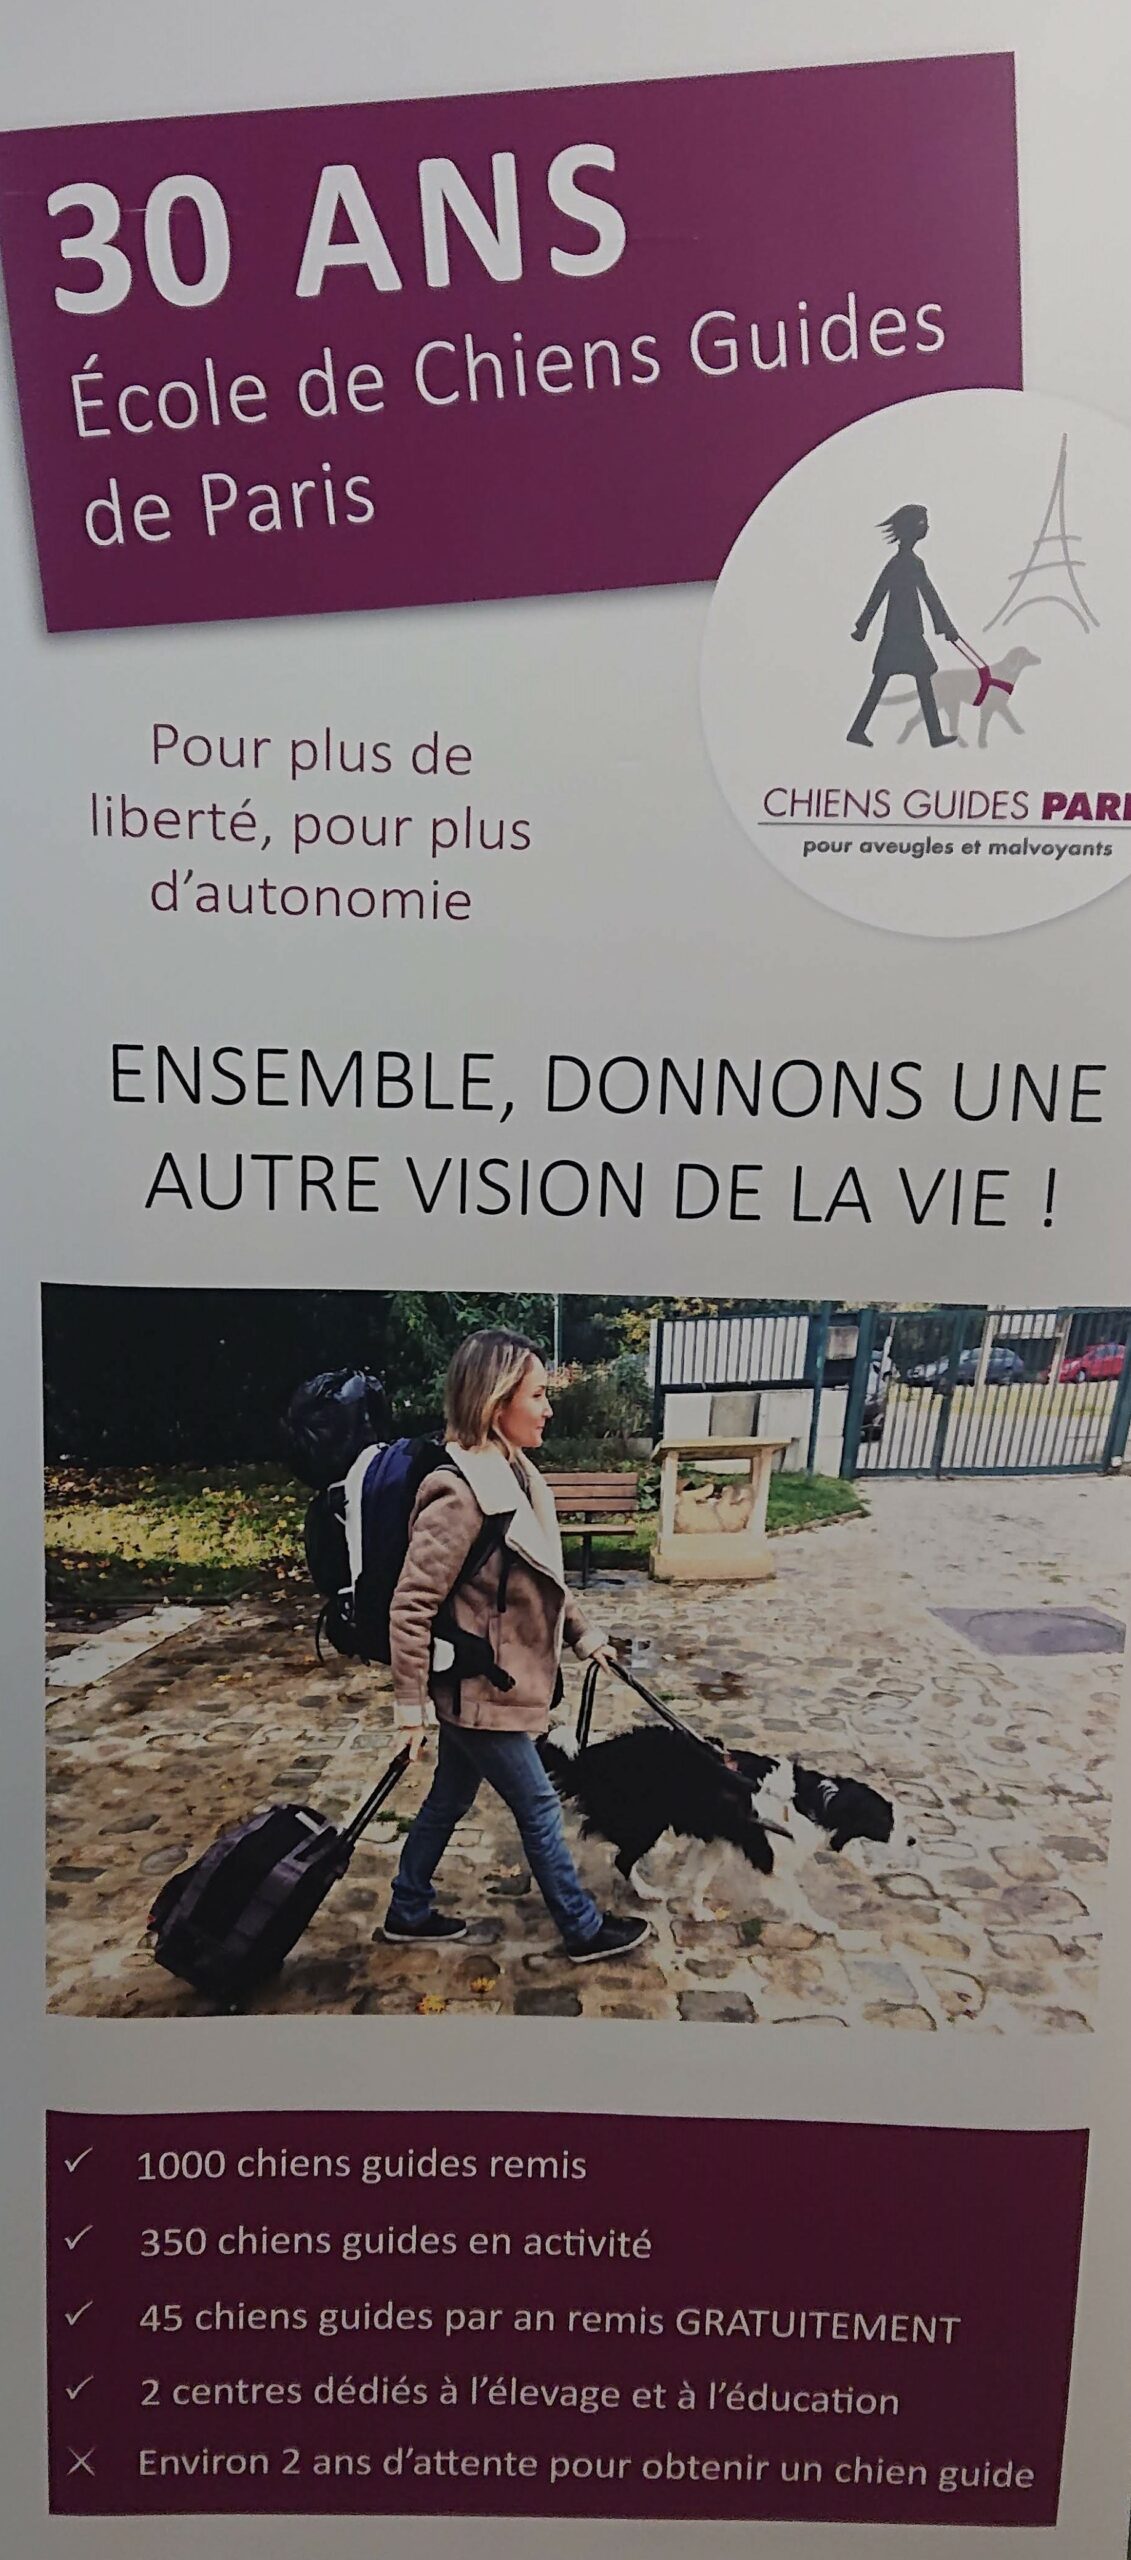 Kakémono indiquant les 30 ans de l'école de chiens guides de Paris et les principaux chiffres de l'école.